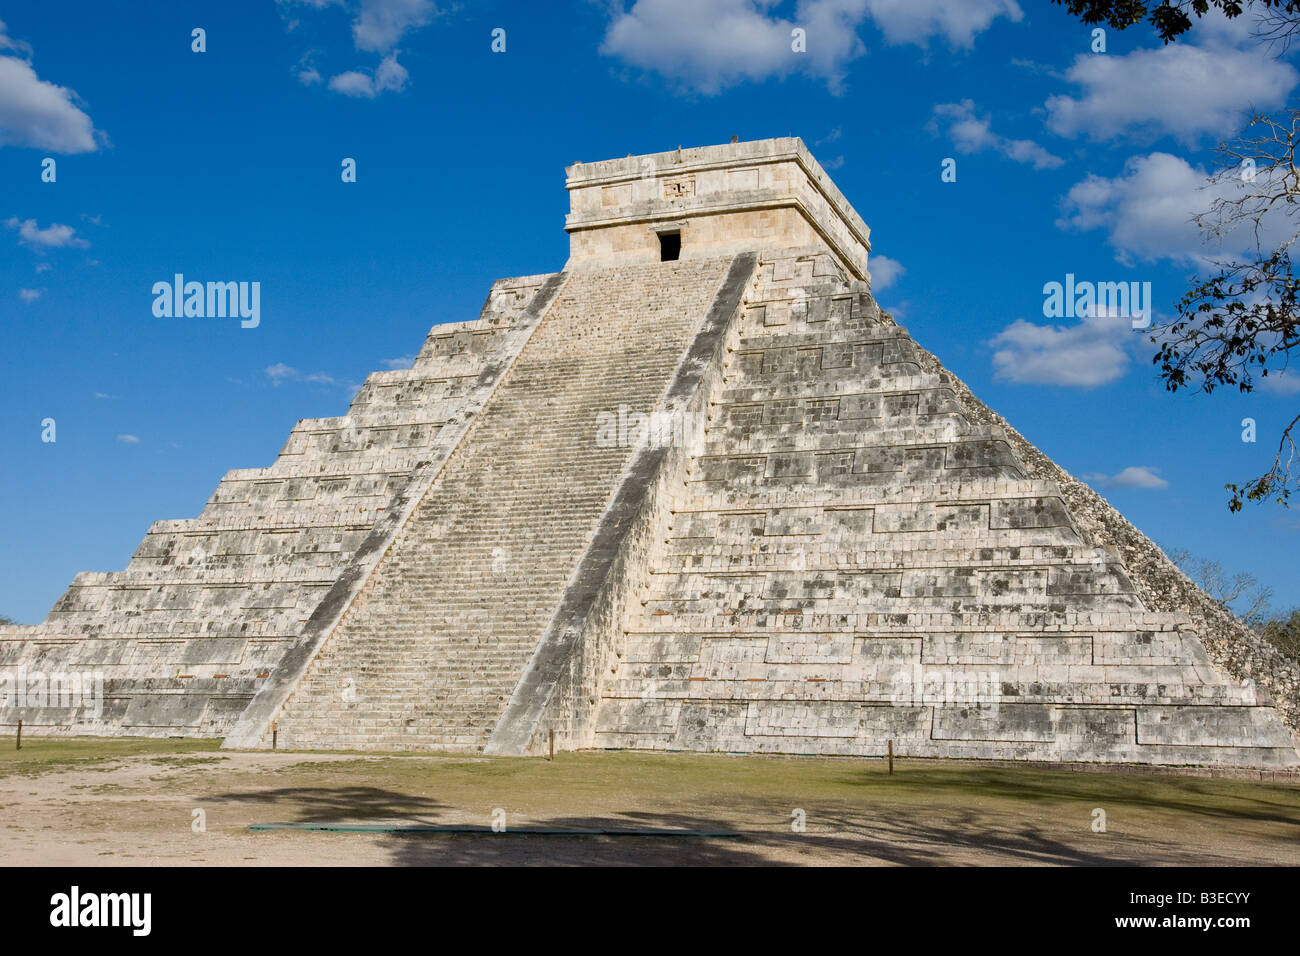 La pyramide de Chichen Itza au Mexique Banque D'Images